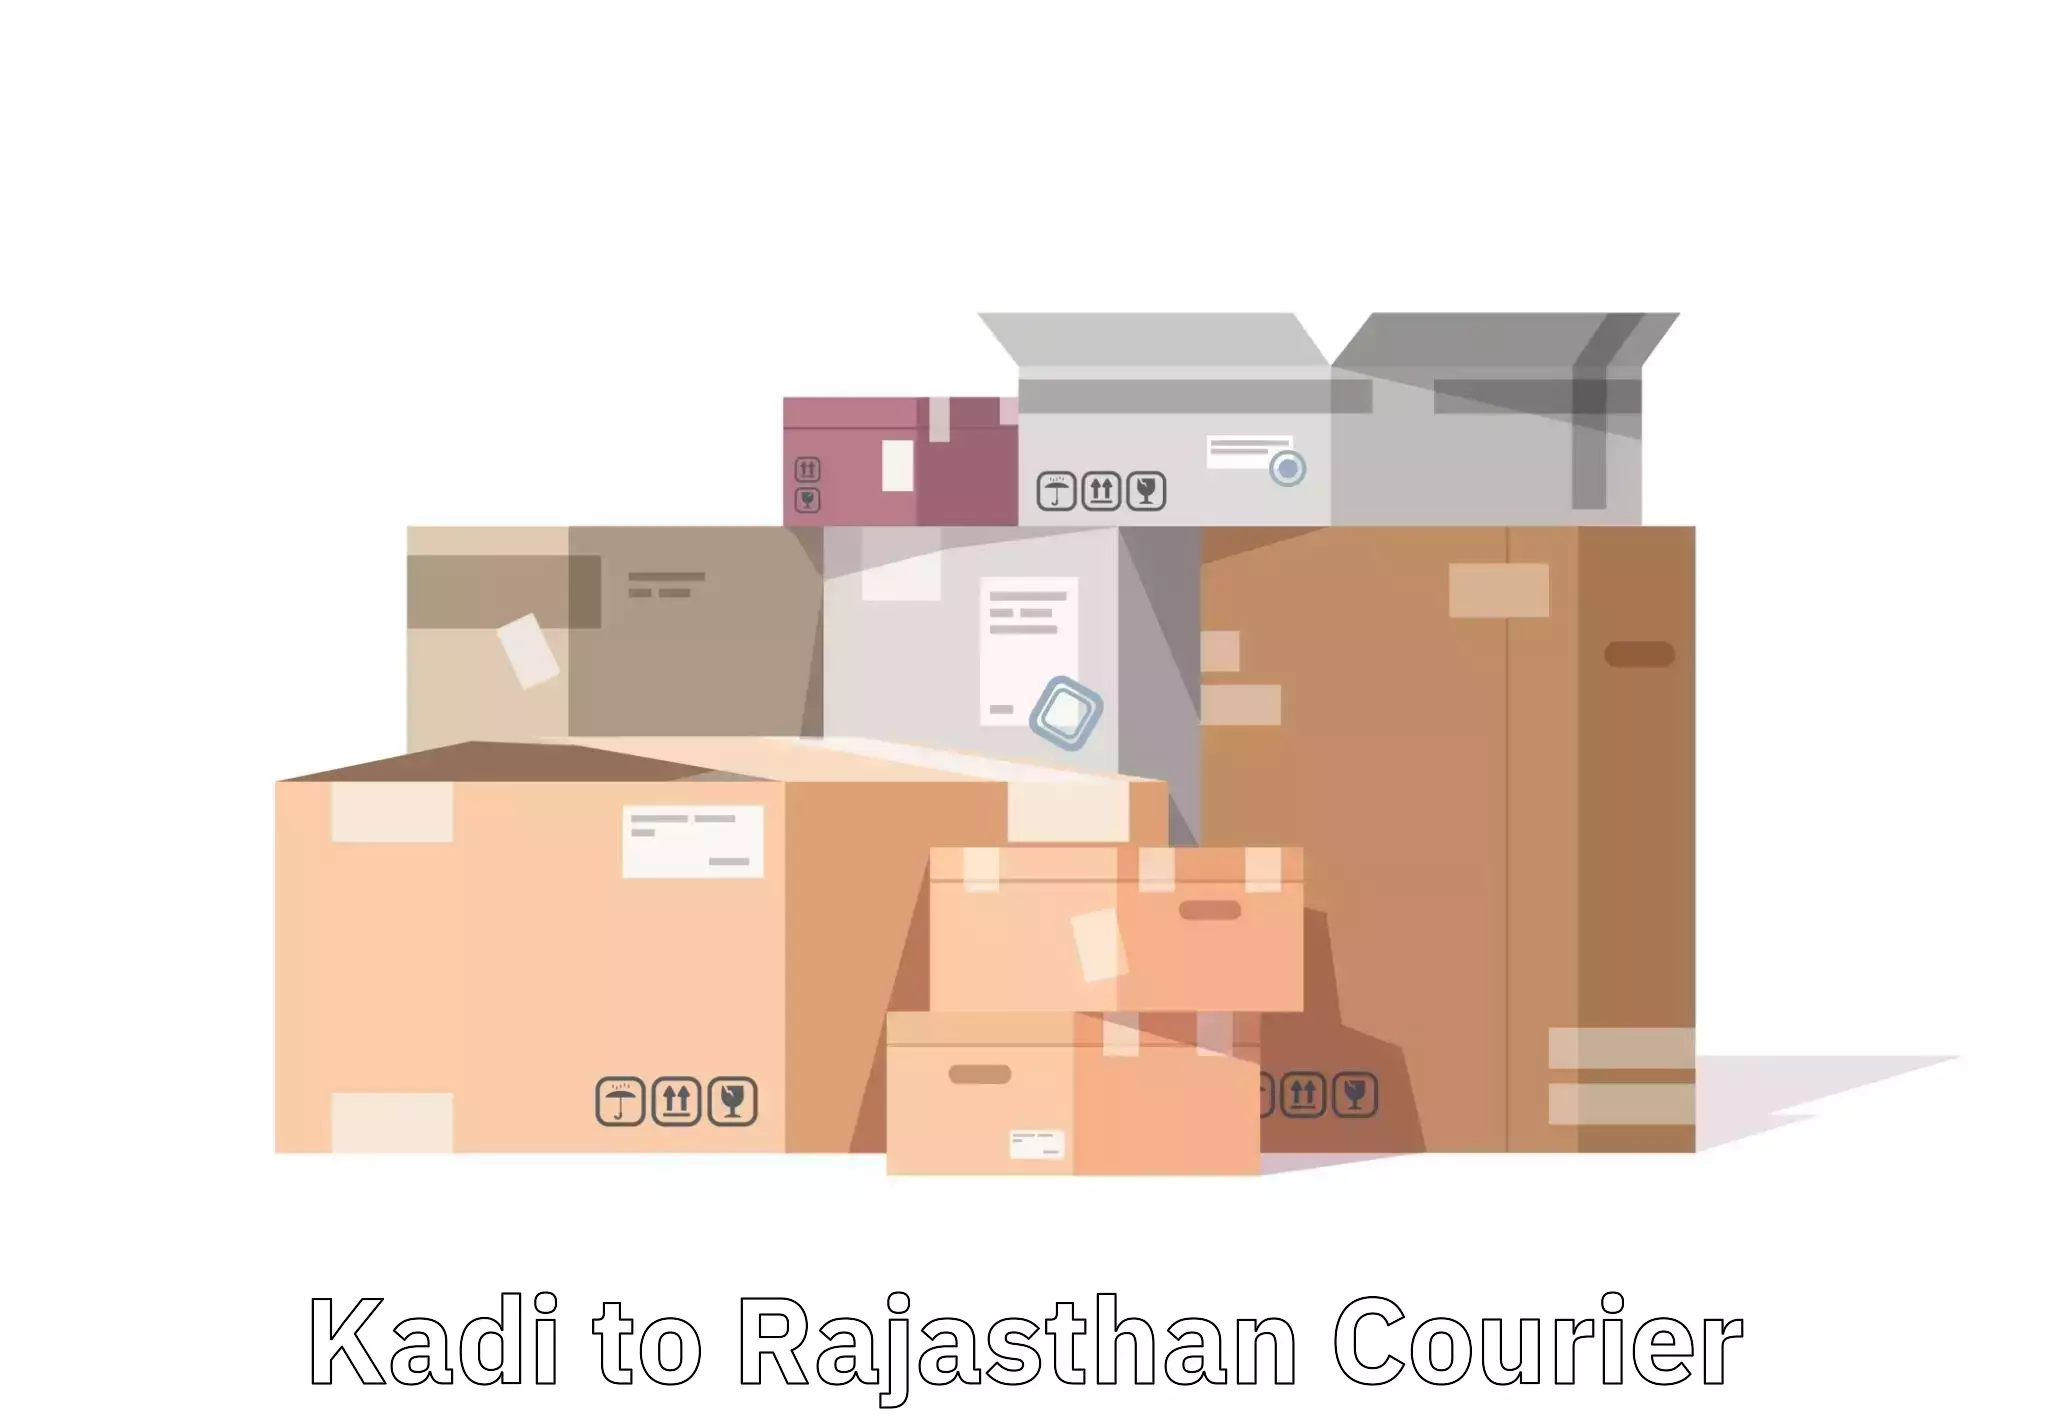 Luggage transport service Kadi to Rajasthan